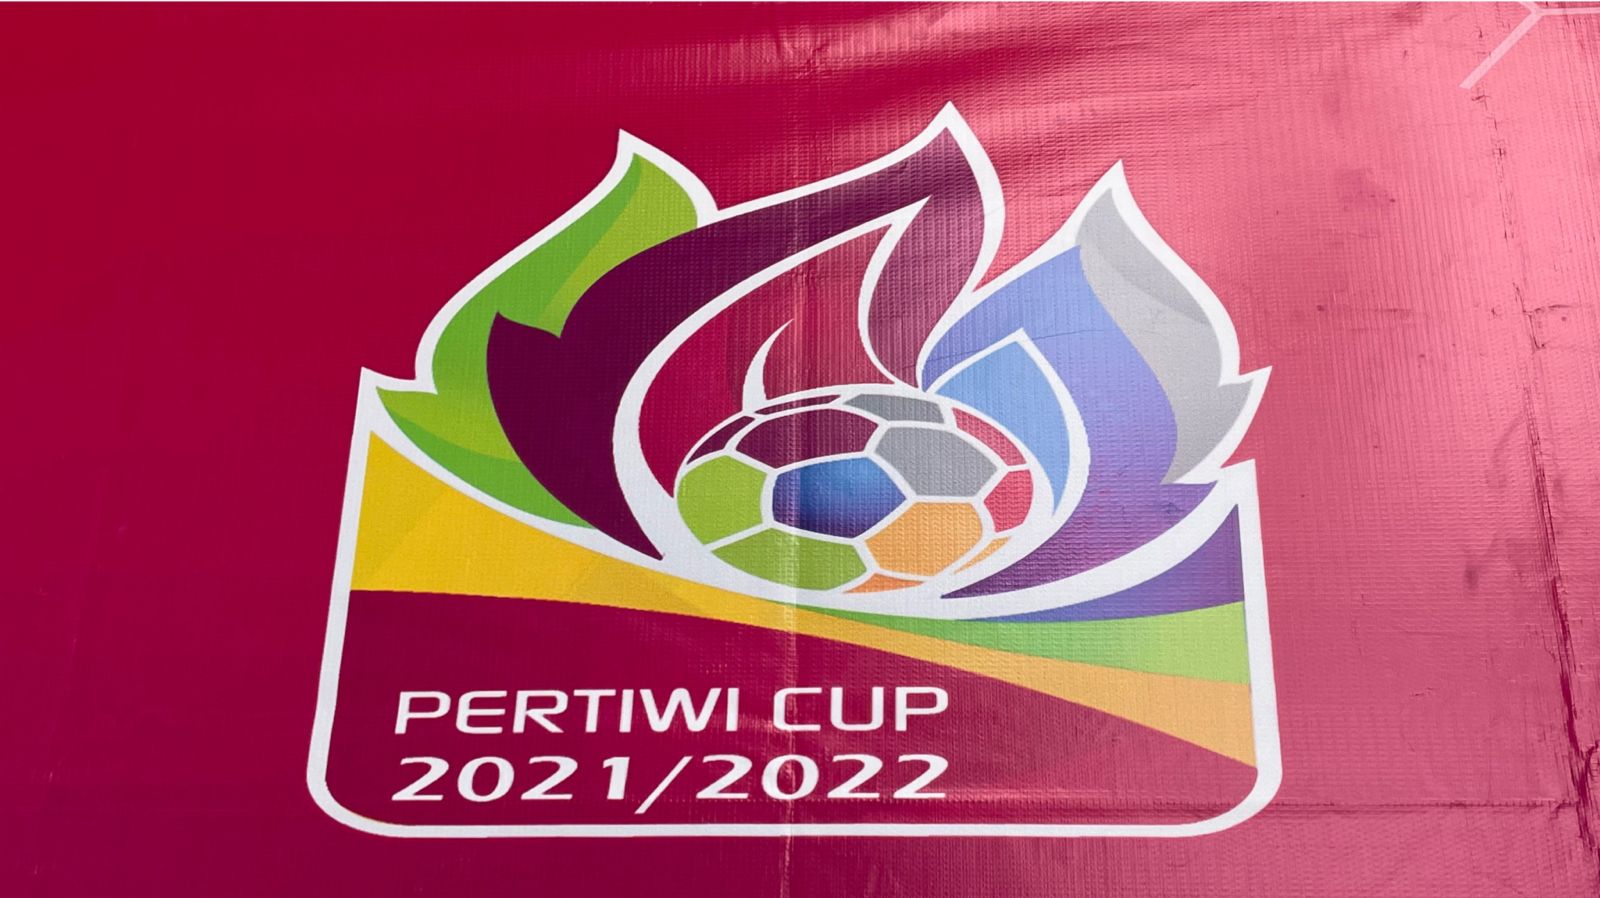 Piala Pertiwi 2021-2022: Jadwal, Hasil, dan Klasemen Lengkap